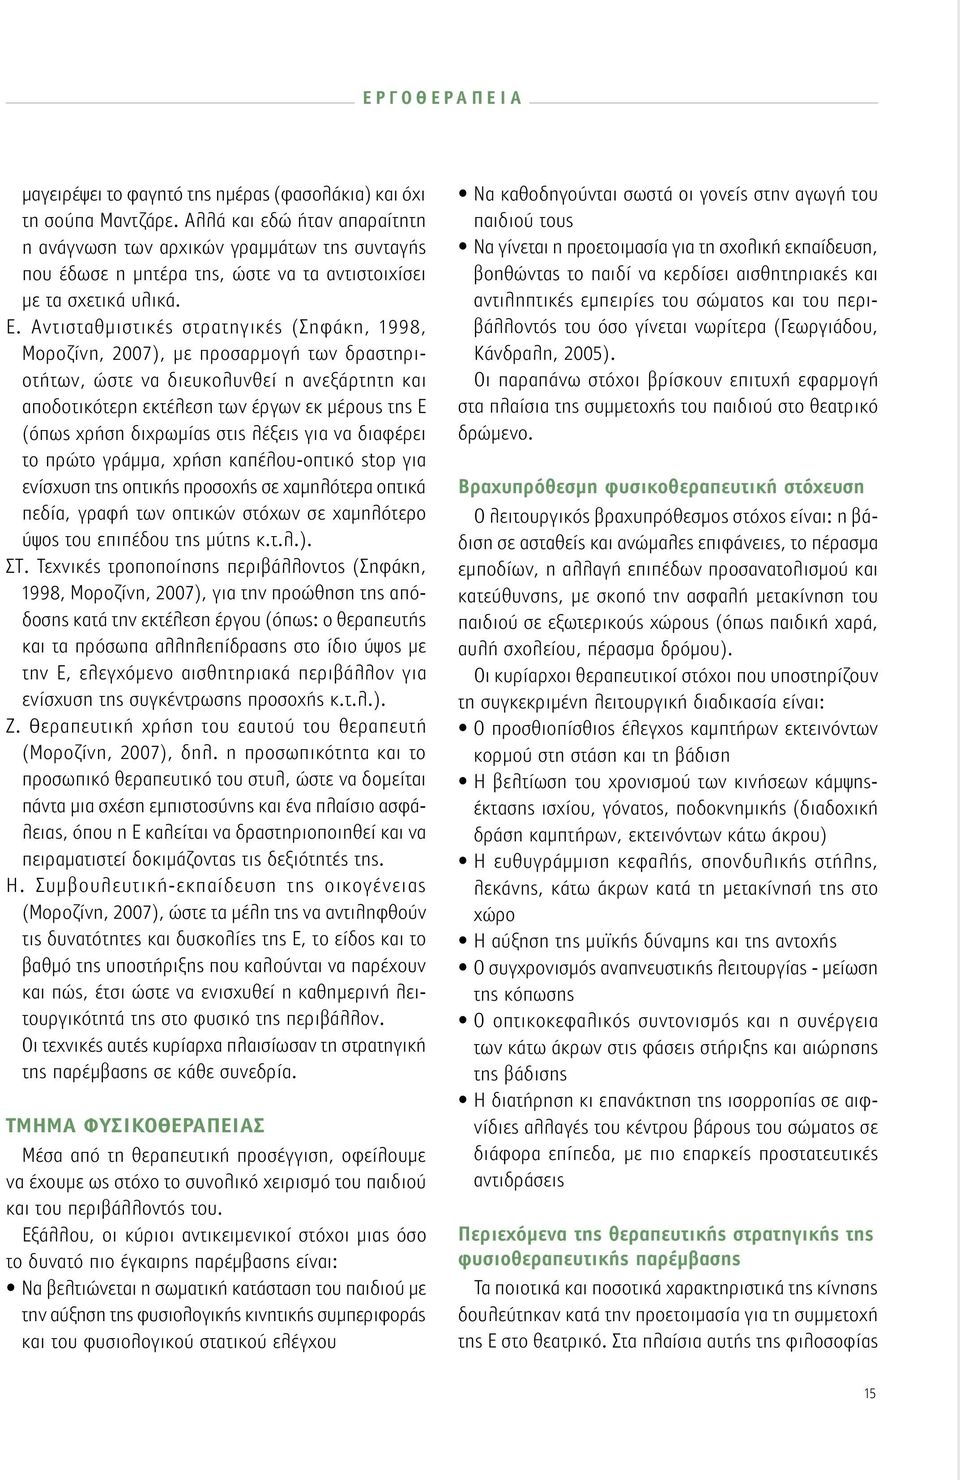 Αντισταθμιστικές στρατηγικές (Σηφάκη, 1998, Μοροζίνη, 2007), με προσαρμογή των δραστηριοτήτων, ώστε να διευκολυνθεί η ανεξάρτητη και αποδοτικότερη εκτέλεση των έργων εκ μέρους της Ε (όπως χρήση